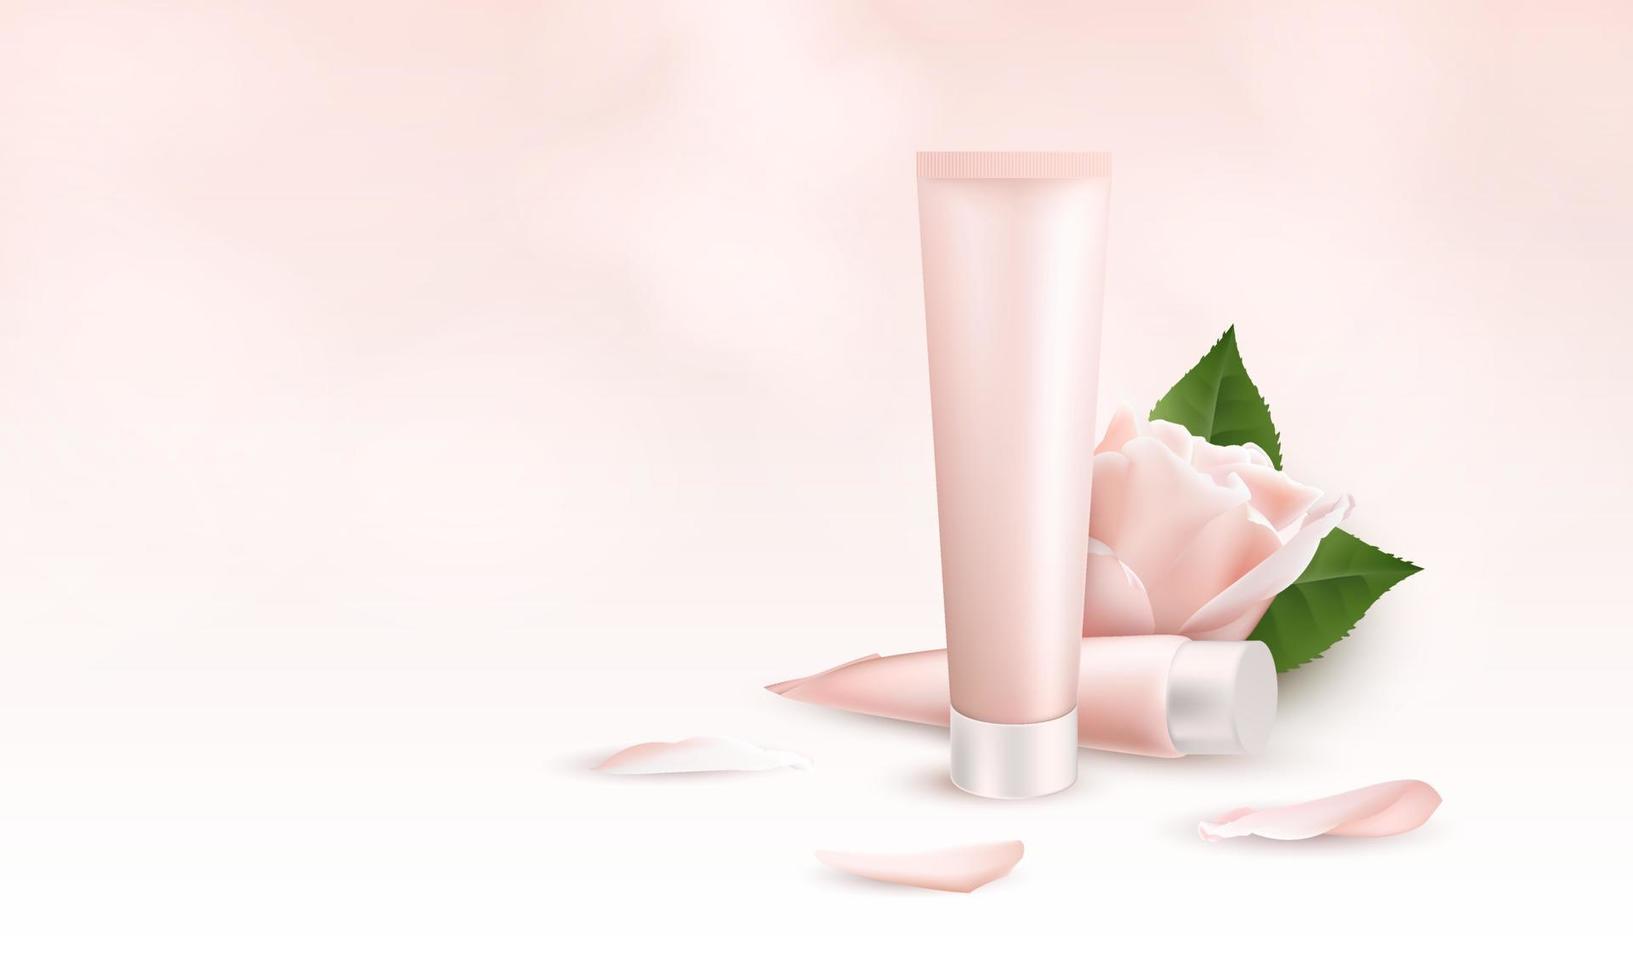 modelo de banner 3d realista para creme de cuidados com a pele. maquete de embalagem de anúncio para produtos cosméticos e médicos com dois tubos de creme, flores e pétalas rosa. ilustração vetorial vetor